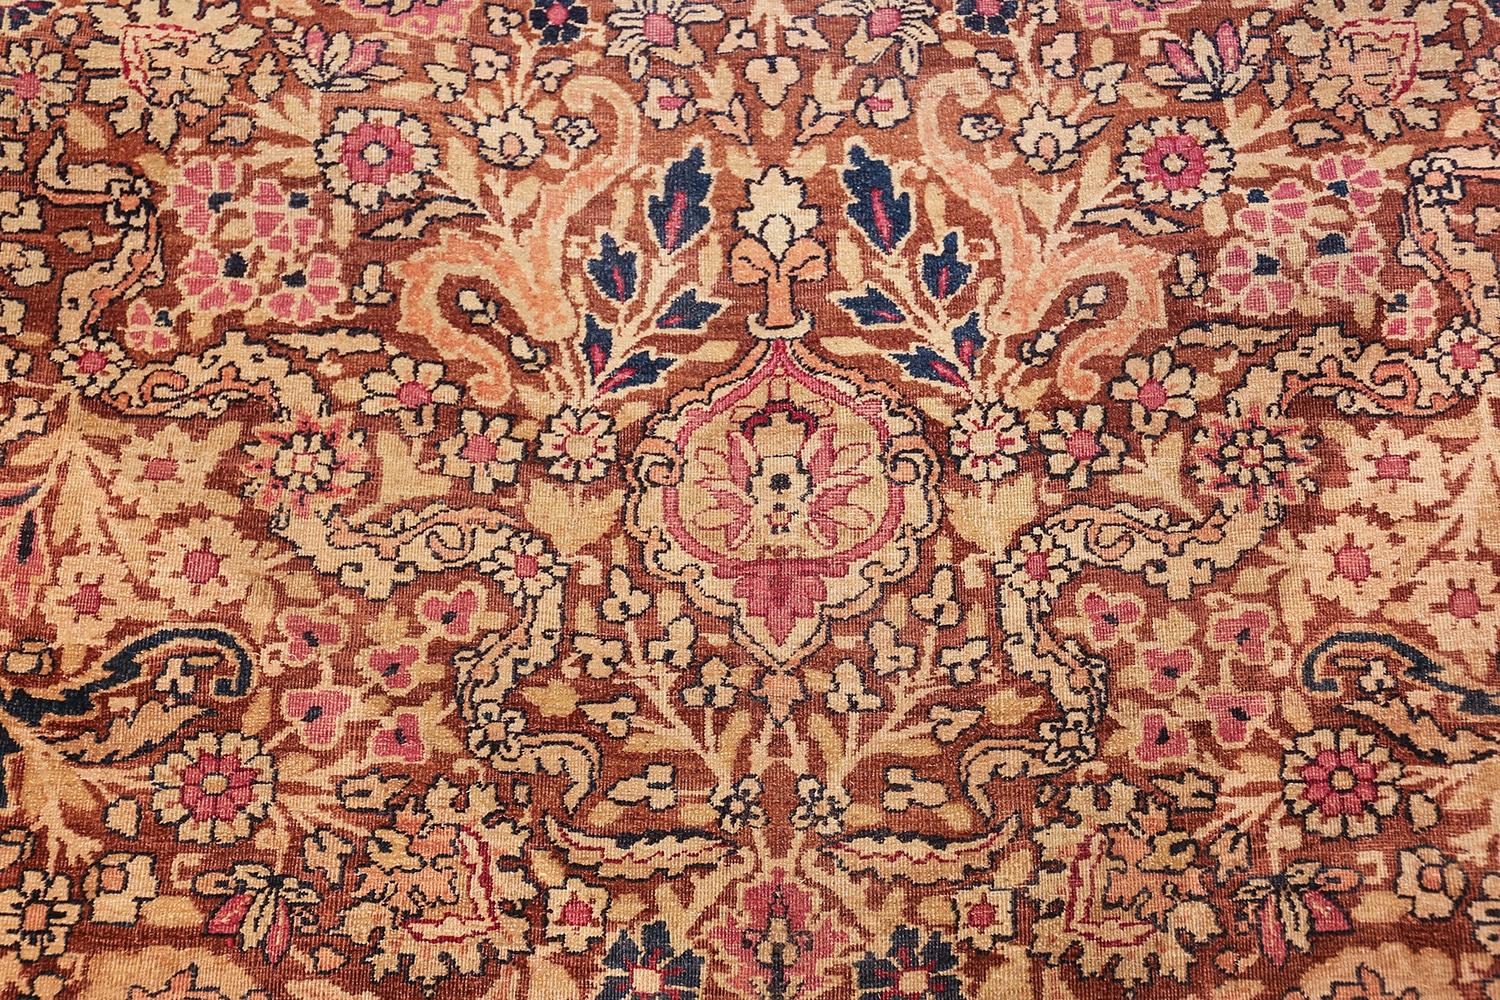 Wool Antique Persian Kerman Carpet. Size: 11' 6